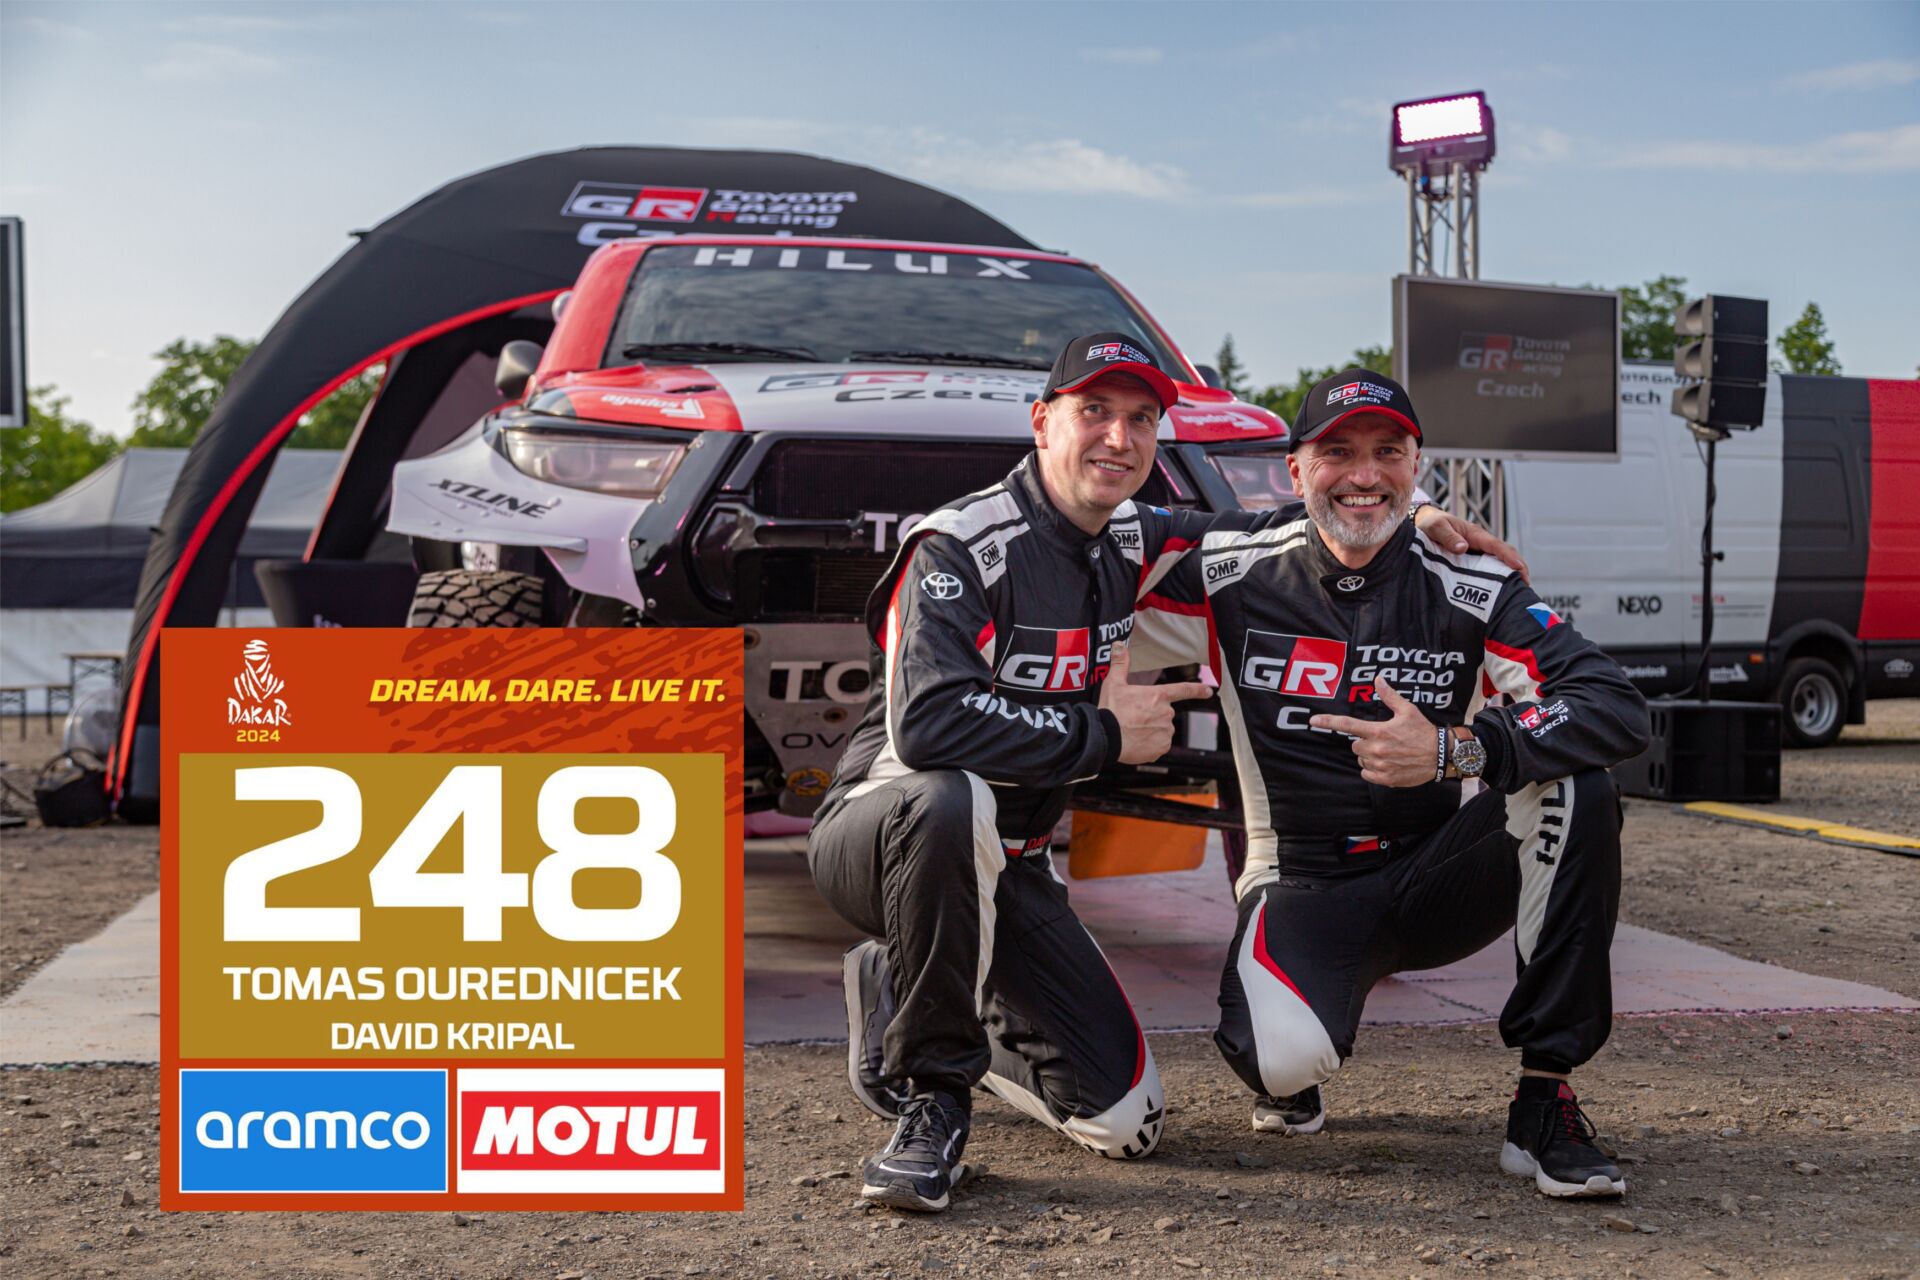 Kde sledovat Rallye Dakar a šťastné číslo 248?